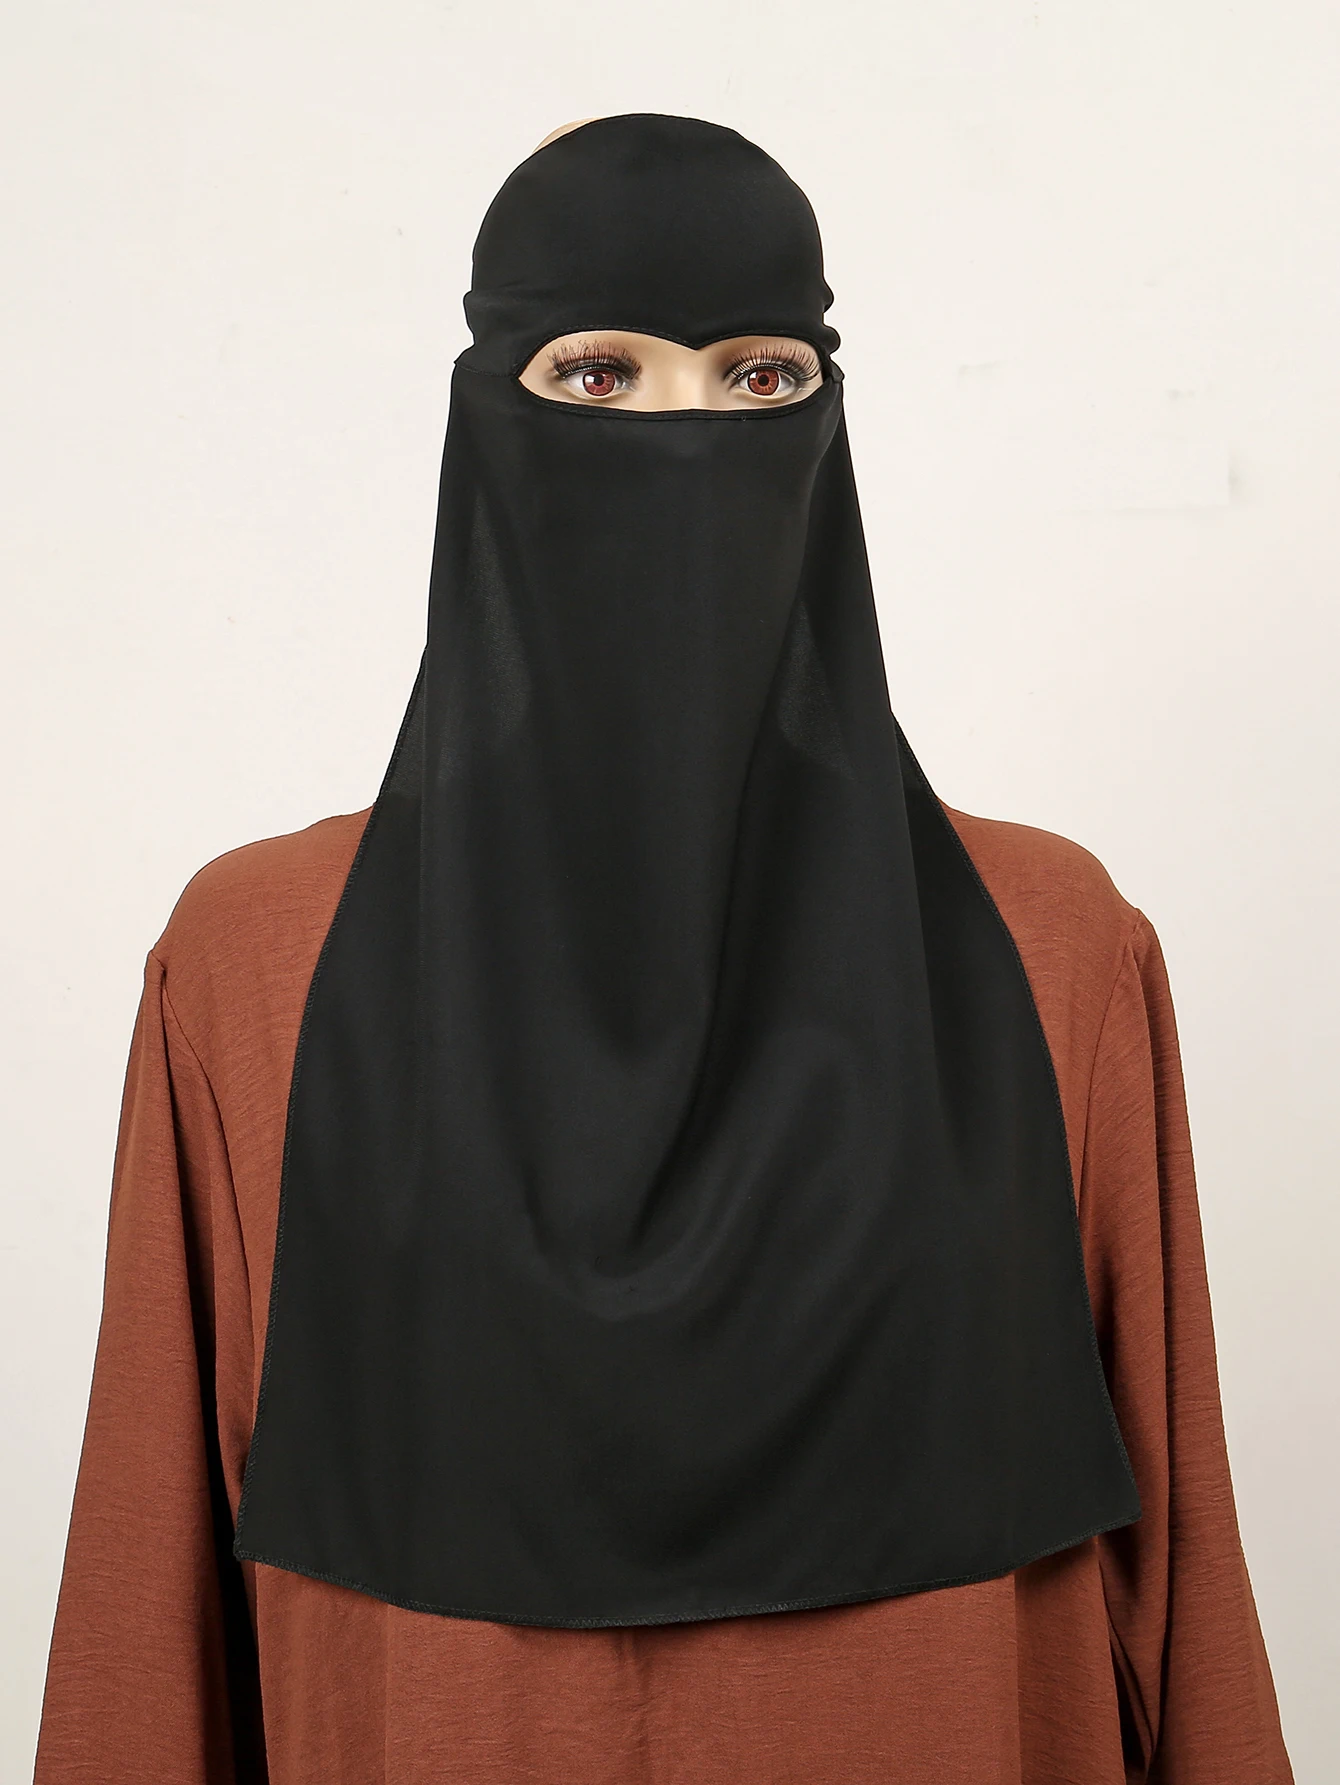 

Головной платок Ближнего Востока Рамадан ИД мусульманский хиджаб женский полный Чехол Niqab Паранджа тюрбан шляпы с вуалью мусульманский шарф полные шали шапка